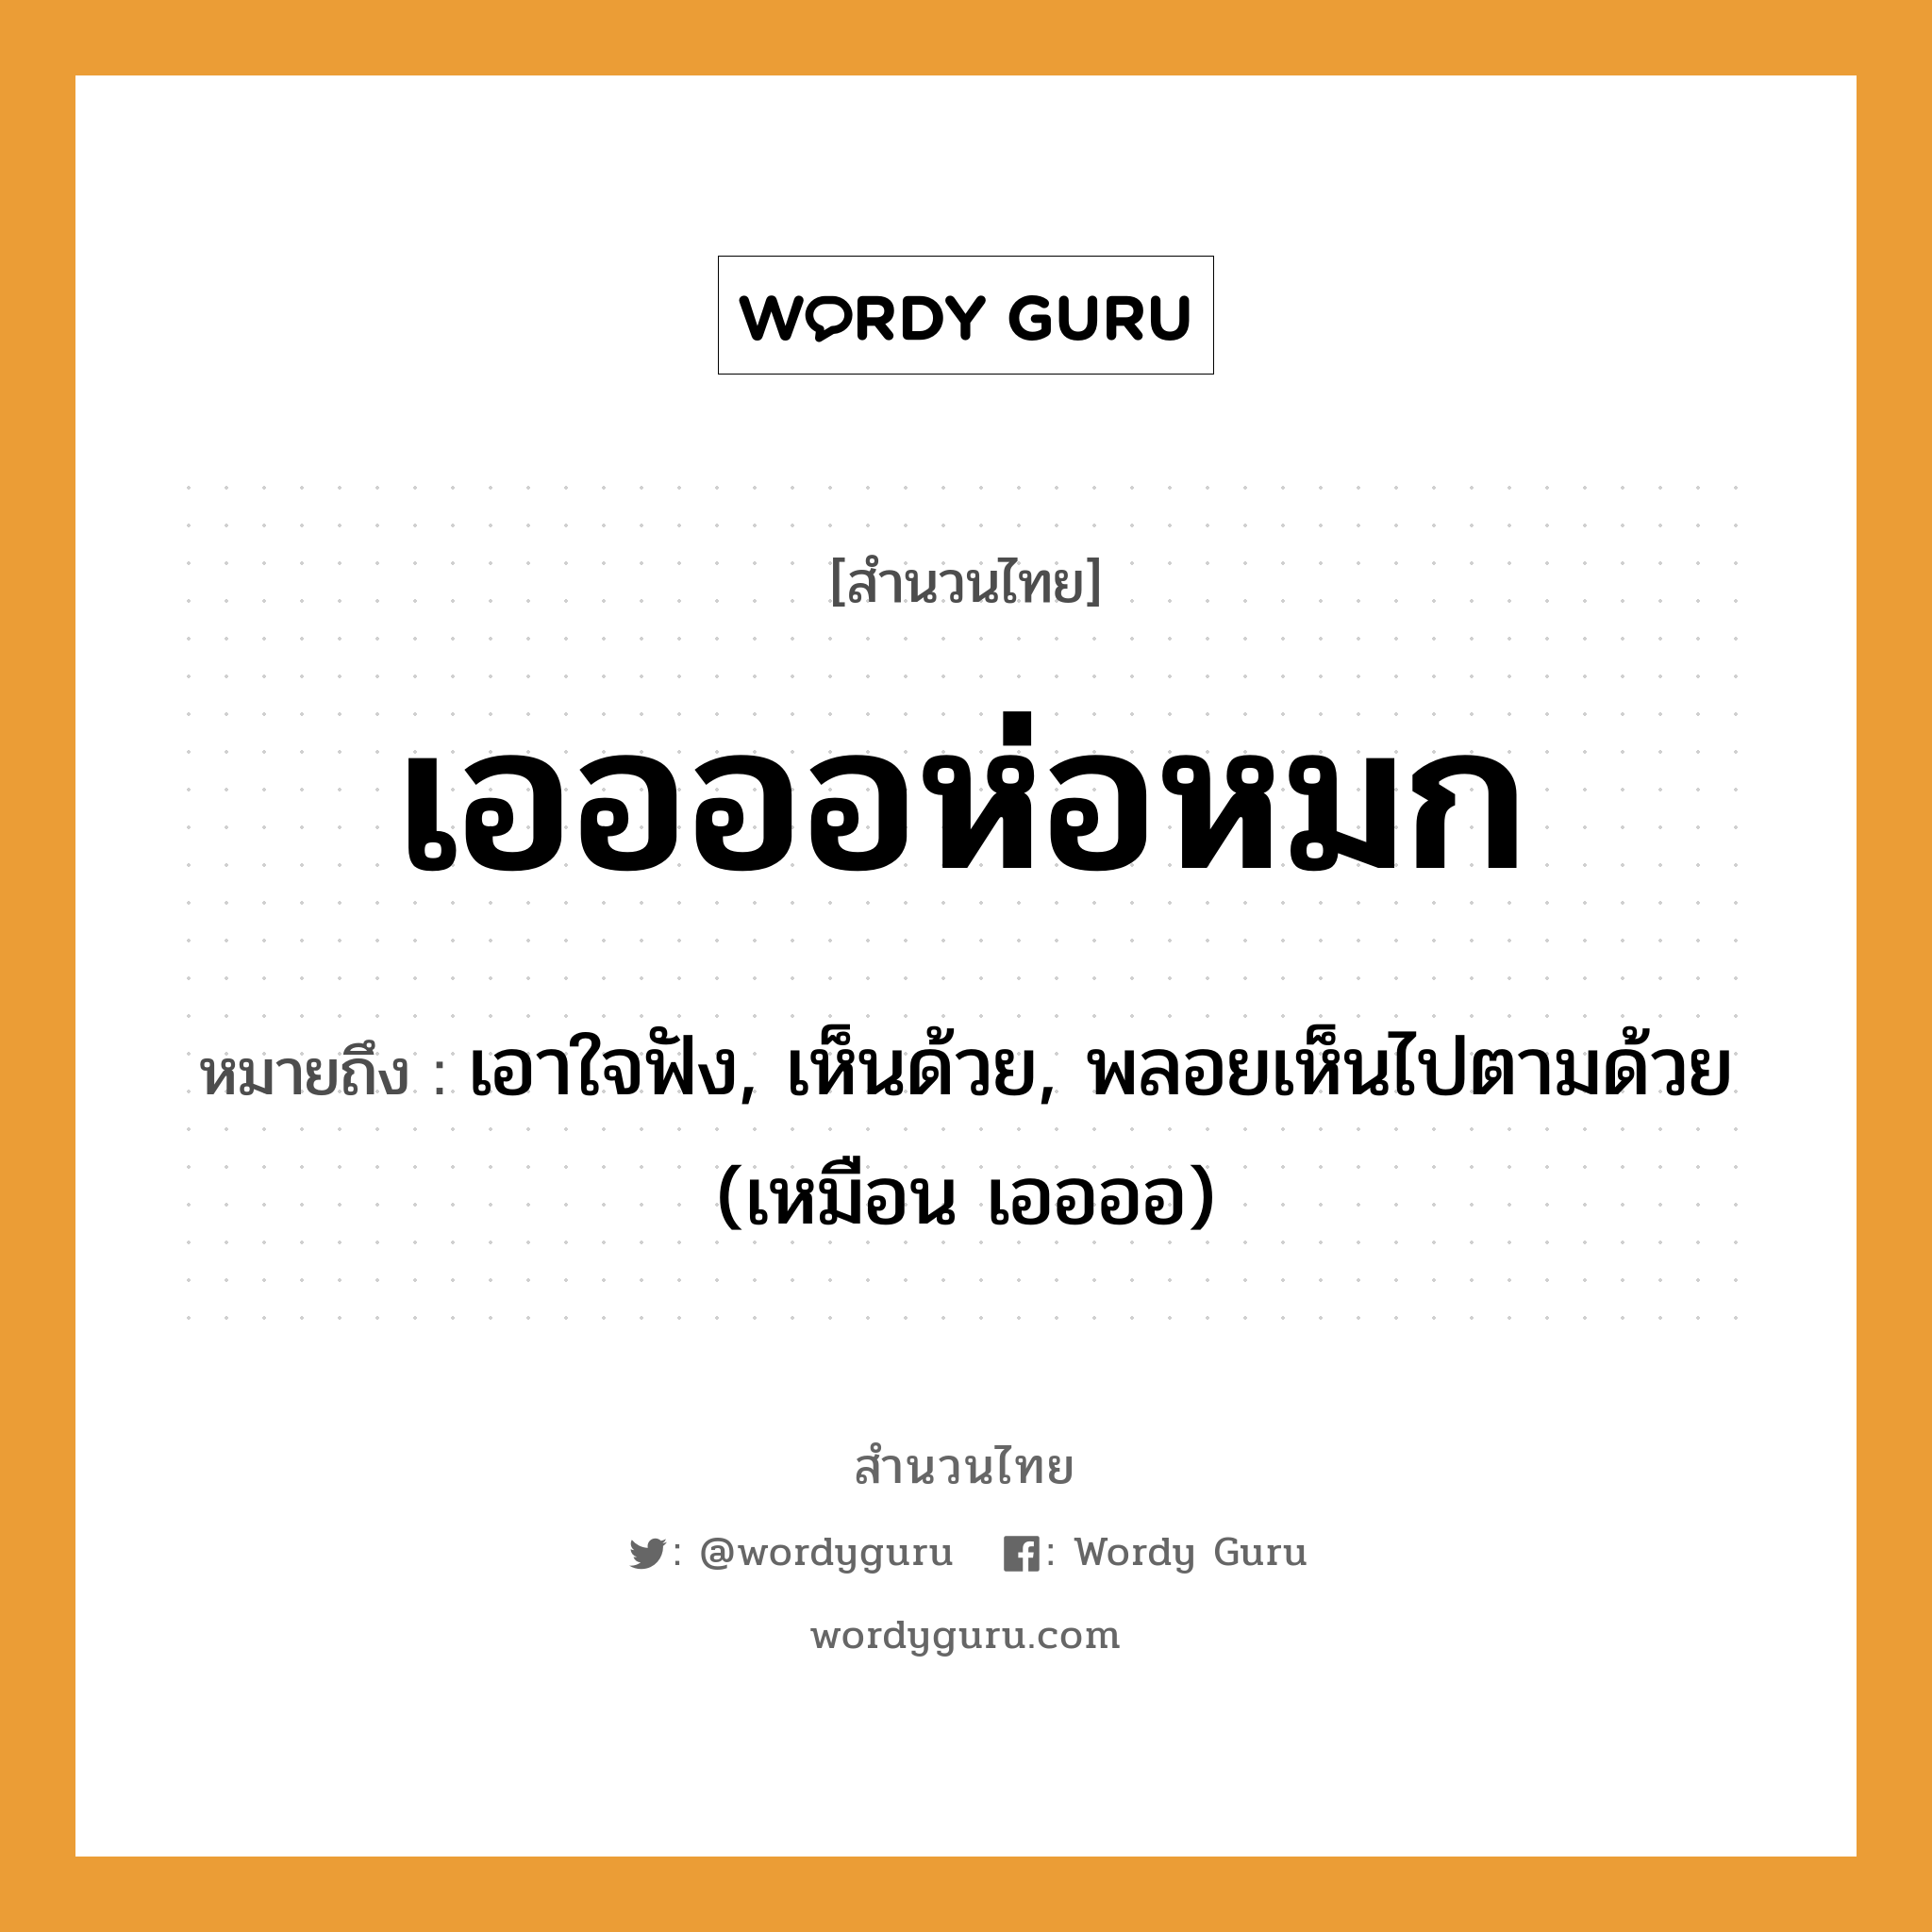 สำนวนไทย: เออออห่อหมก หมายถึง?, สํานวนไทย เออออห่อหมก หมายถึง เอาใจฟัง, เห็นด้วย, พลอยเห็นไปตามด้วย (เหมือน เออออ) คำกริยา ฟัง